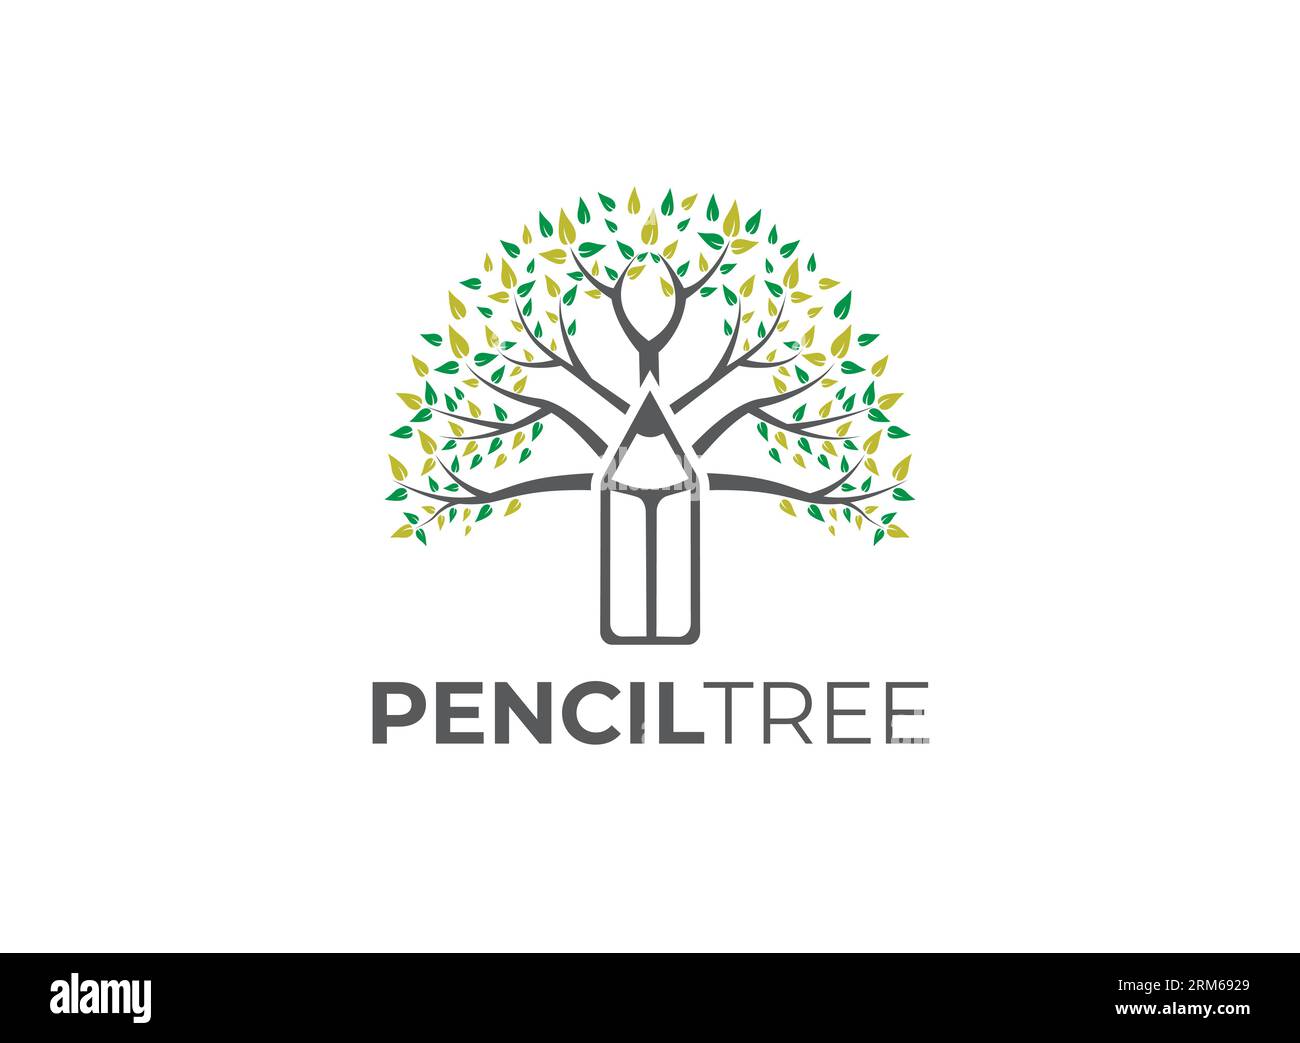 https://c8.alamy.com/comp/2RM6929/pencil-tree-logo-template-vector-design-2RM6929.jpg